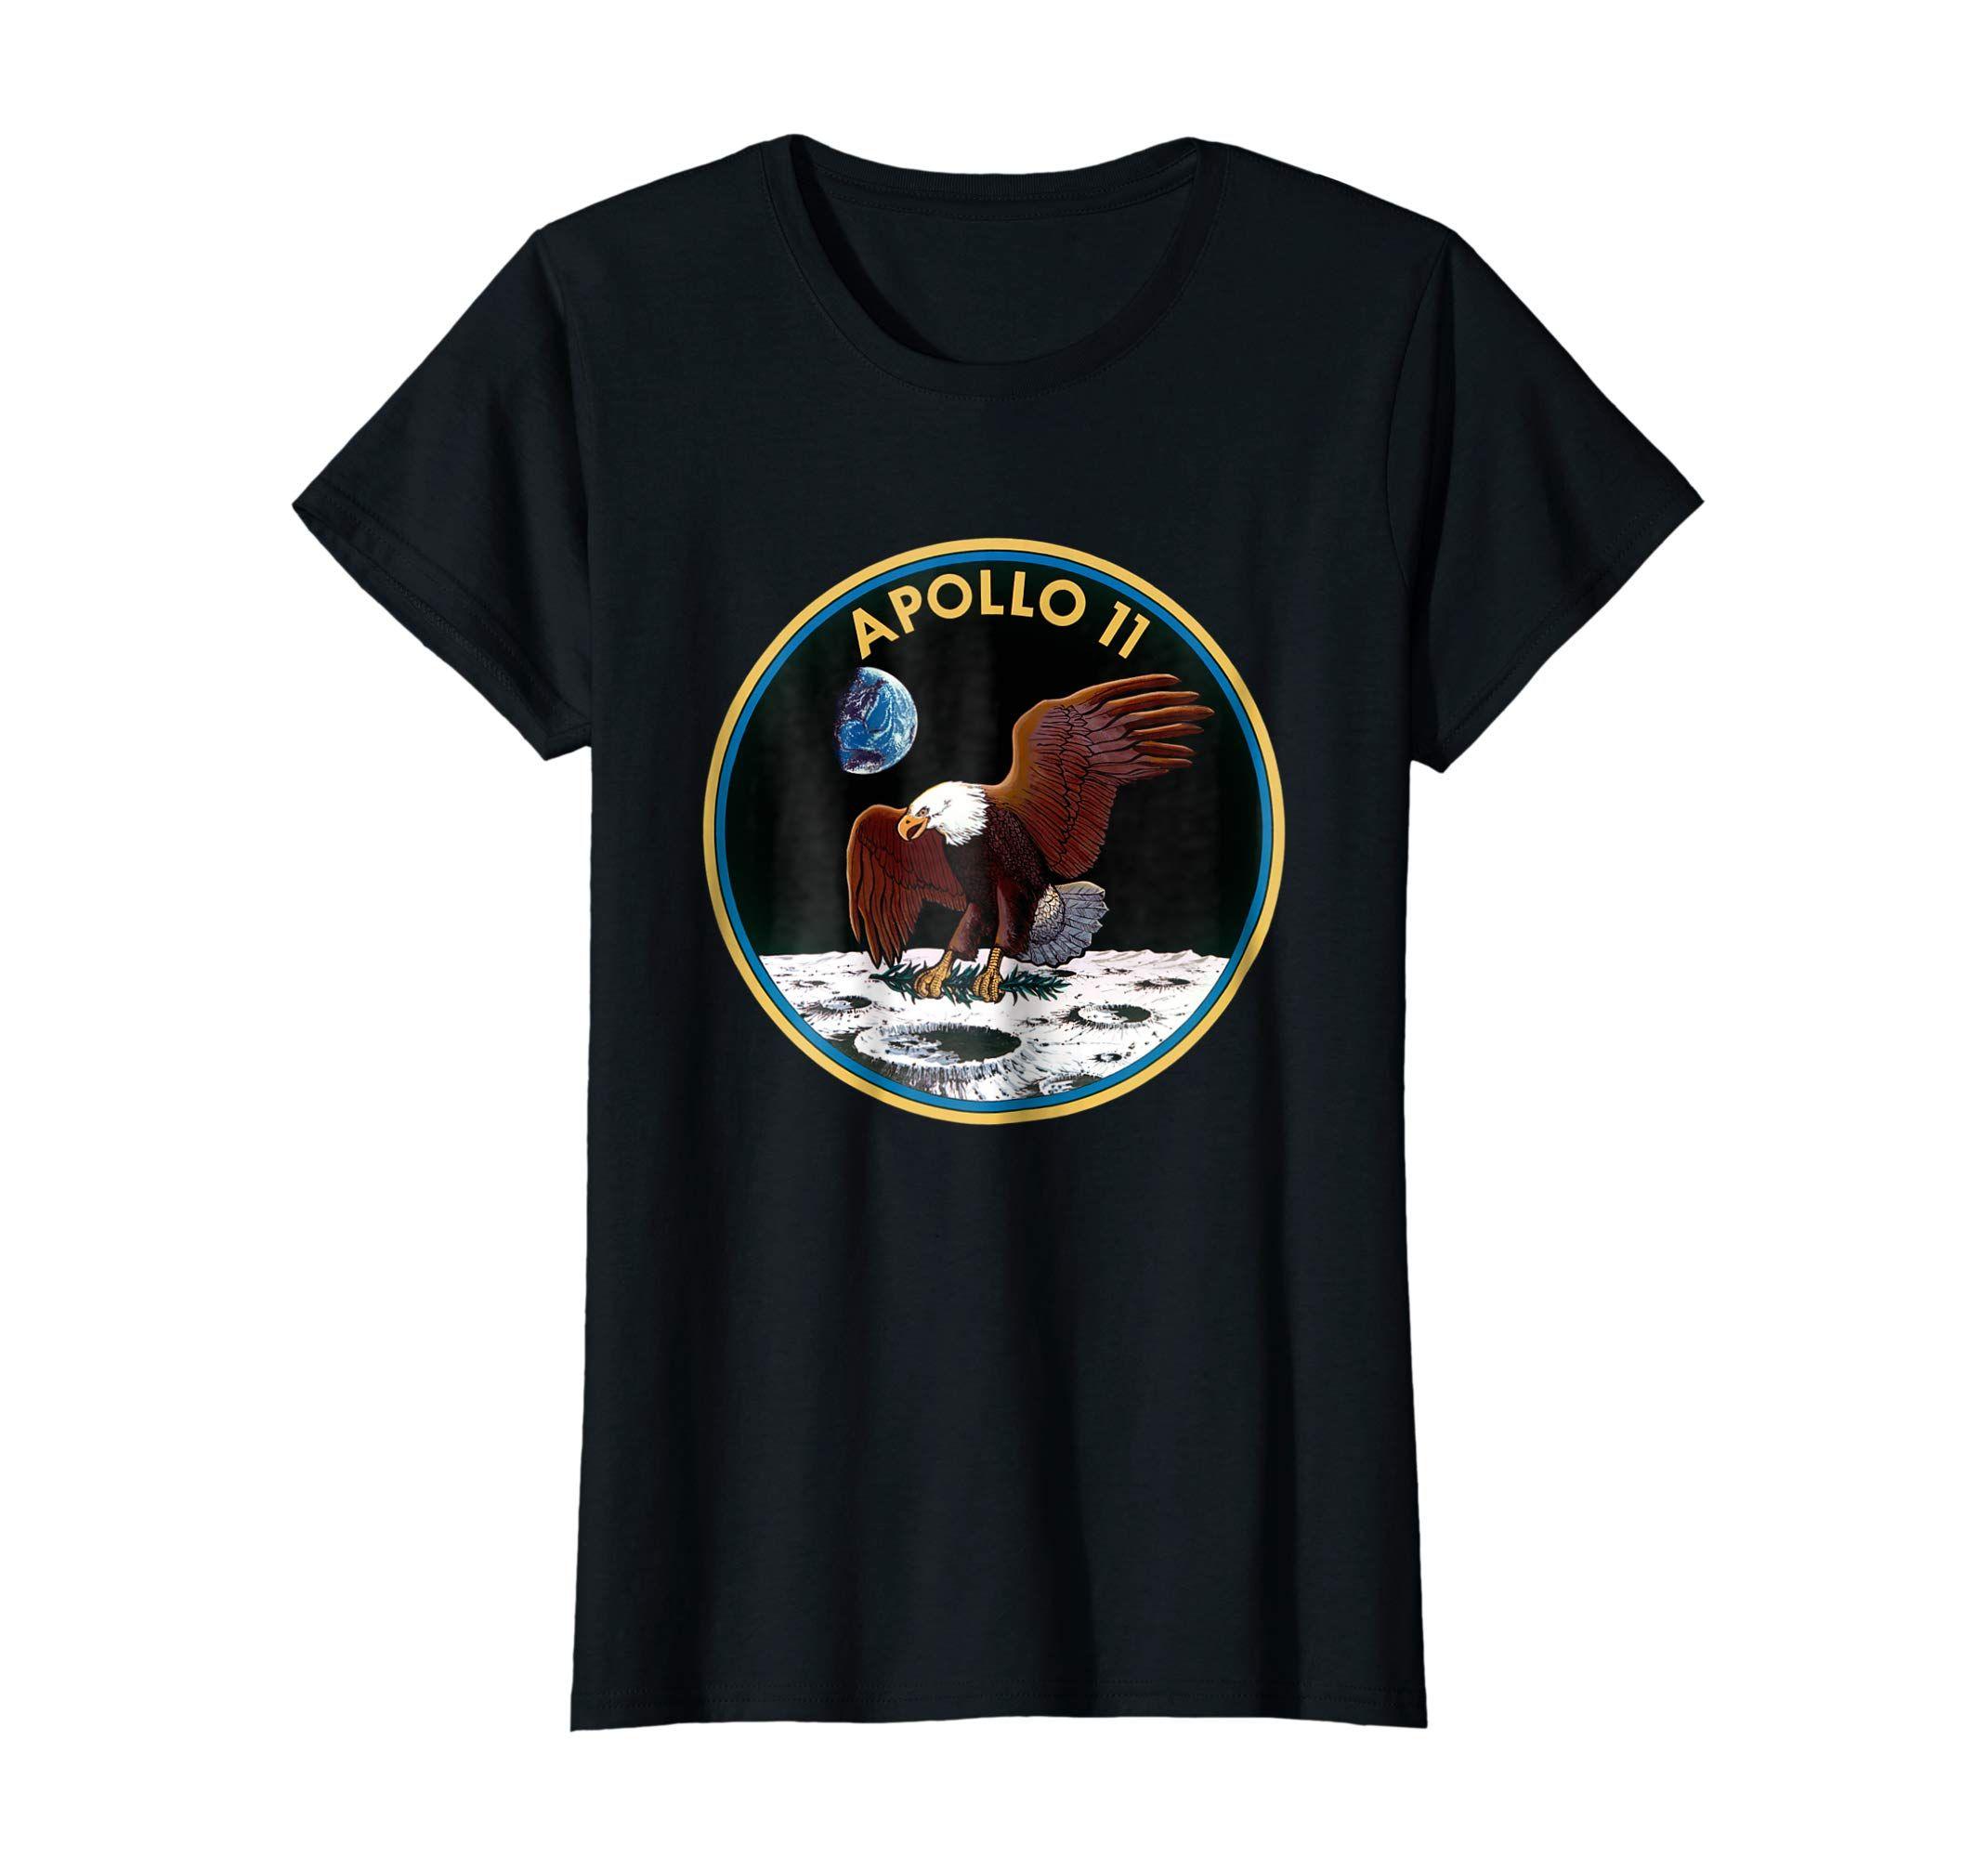 NASA Moon Logo - Amazon.com: Apollo 11 NASA Space Moon Landing Astronaut Logo T-Shirt ...